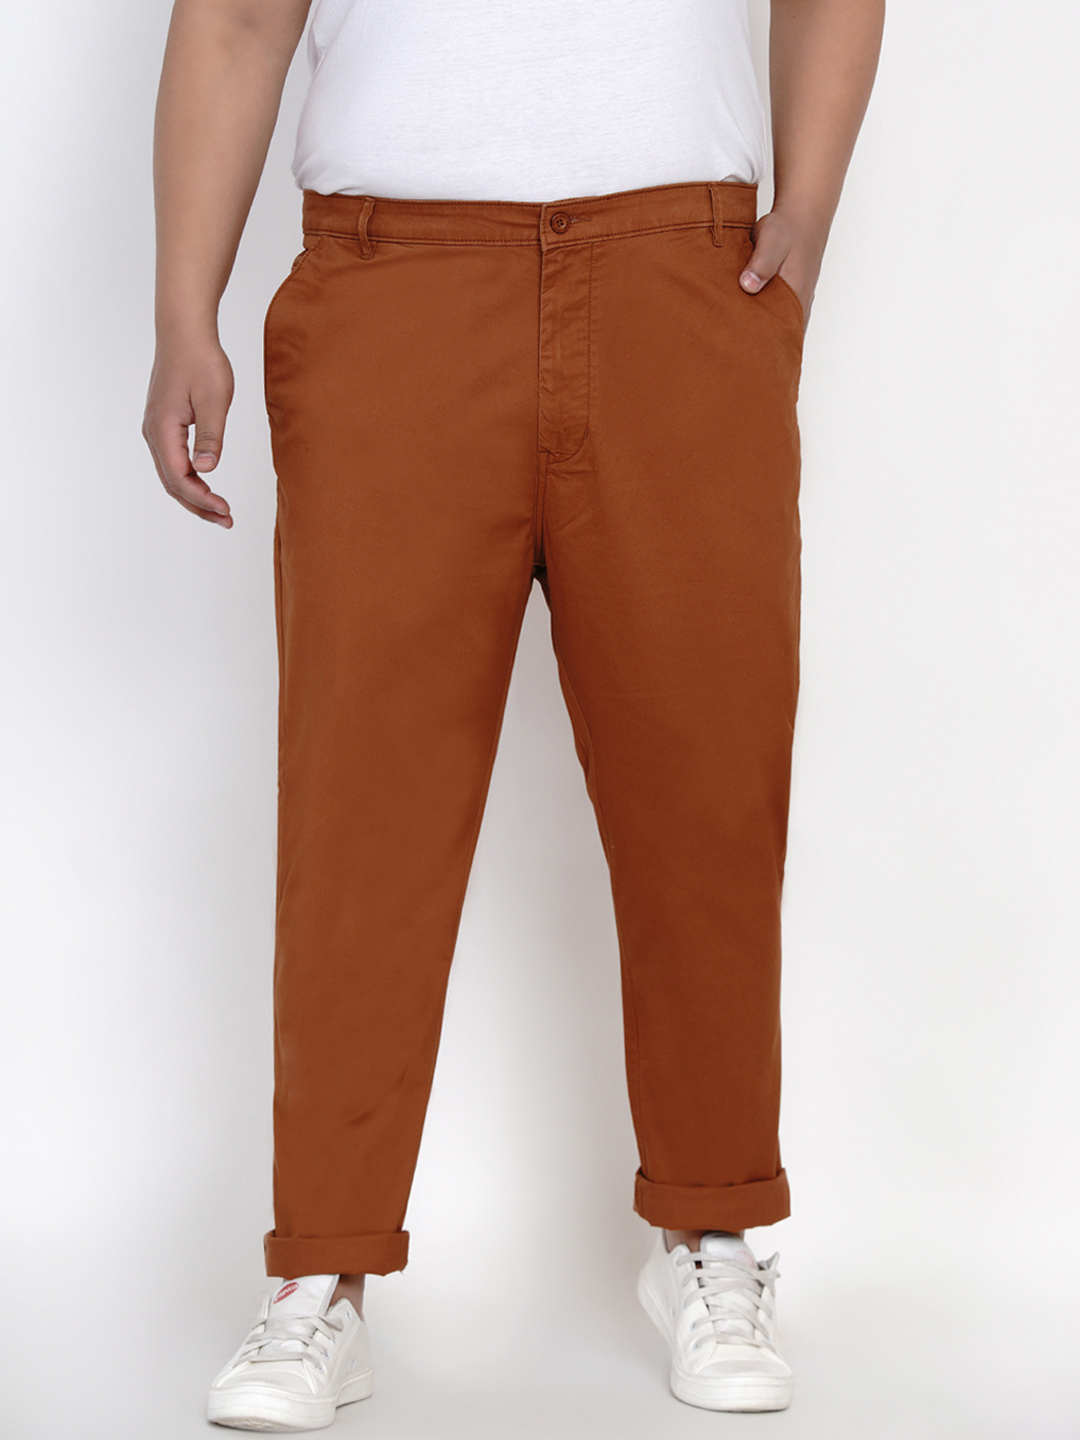 bottomwear/trousers/JPTR2161F/jptr2161f-1.jpg